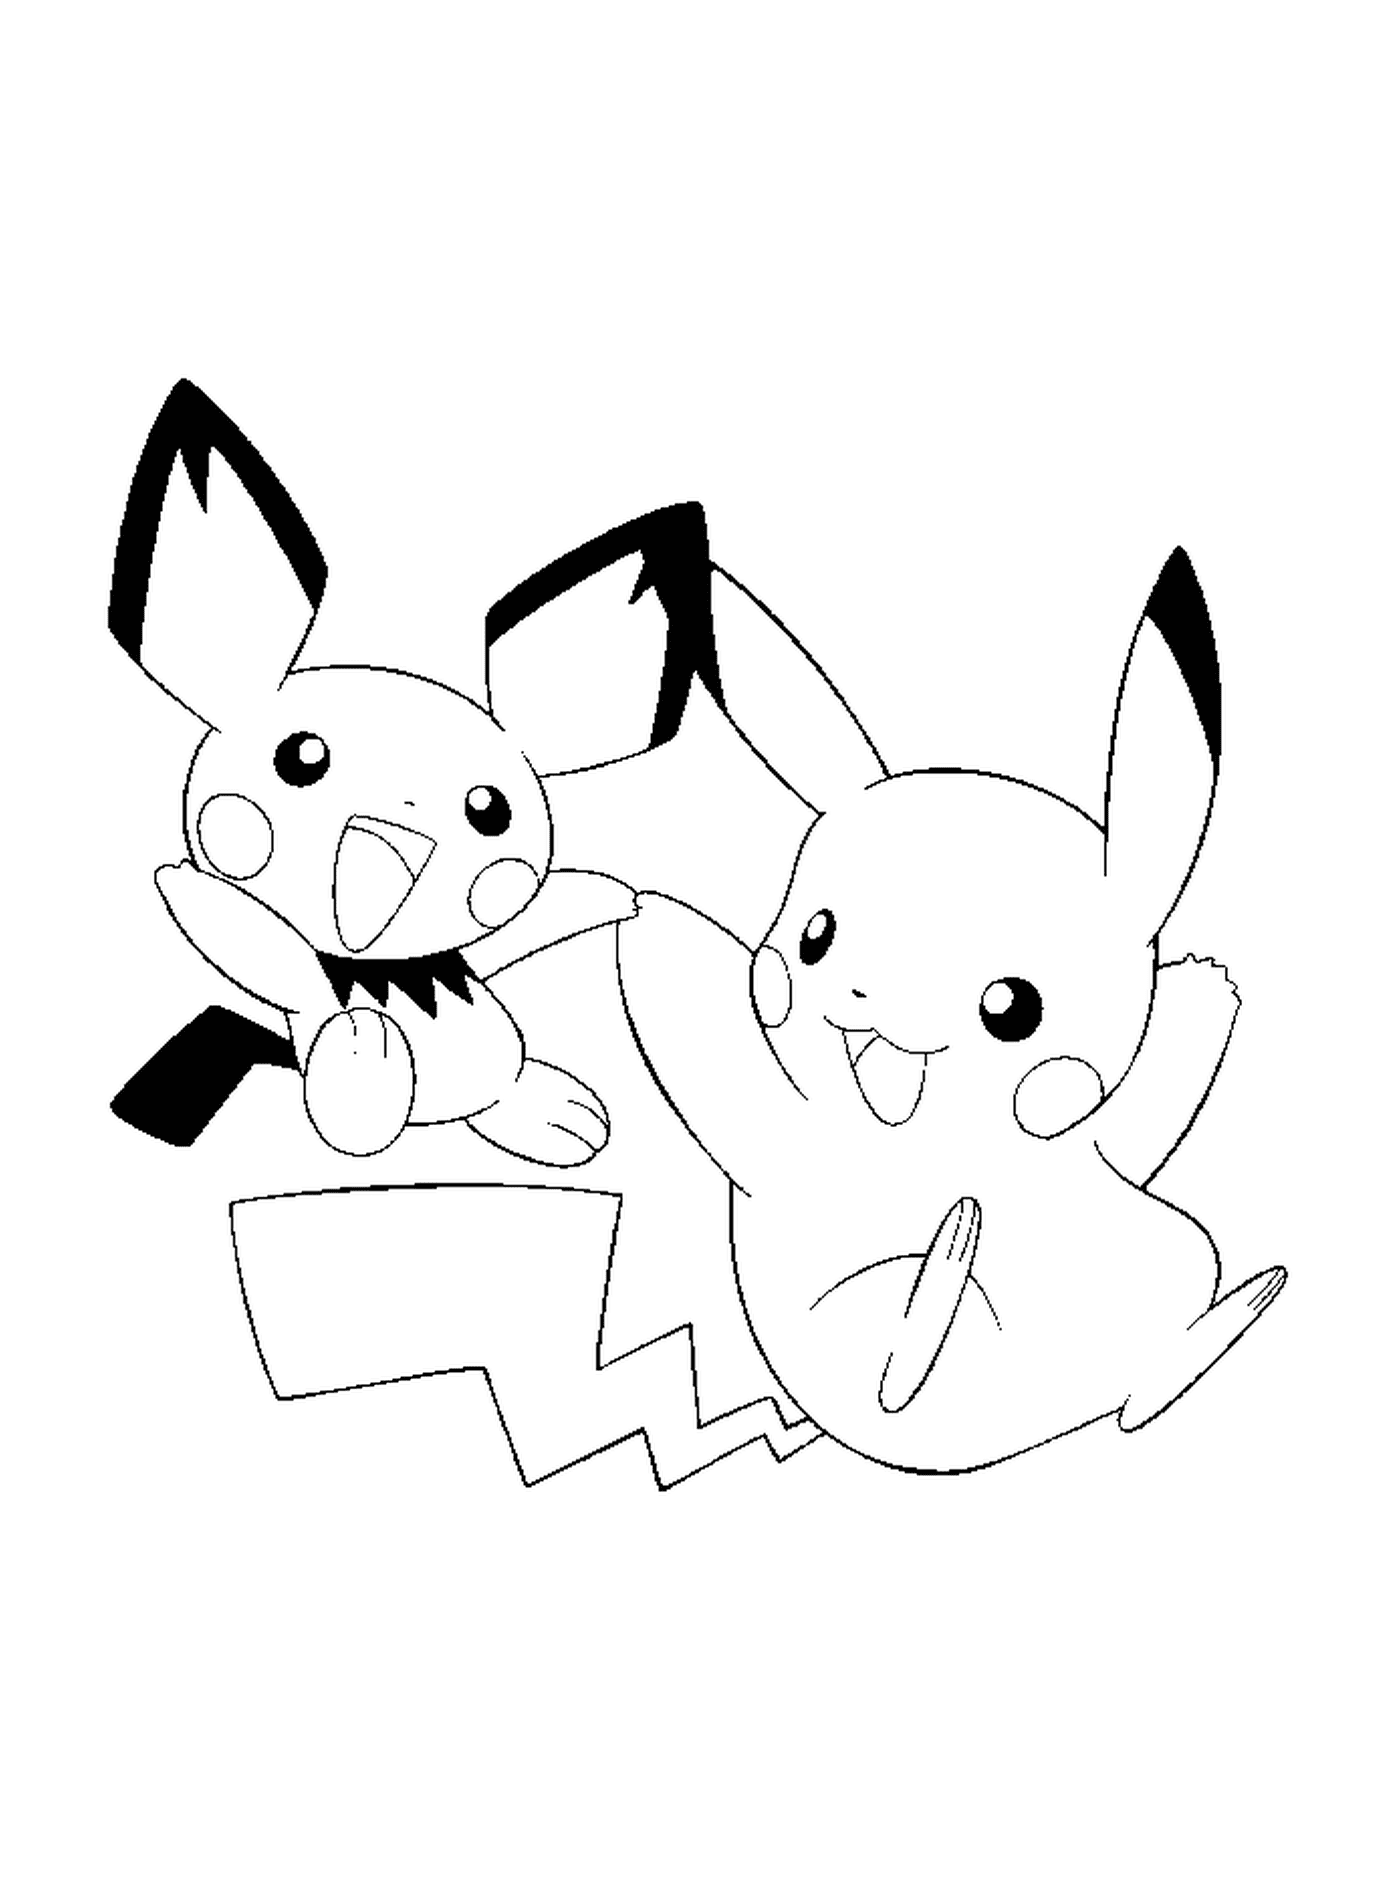  Pikachu and Pichu, inseparable friends 